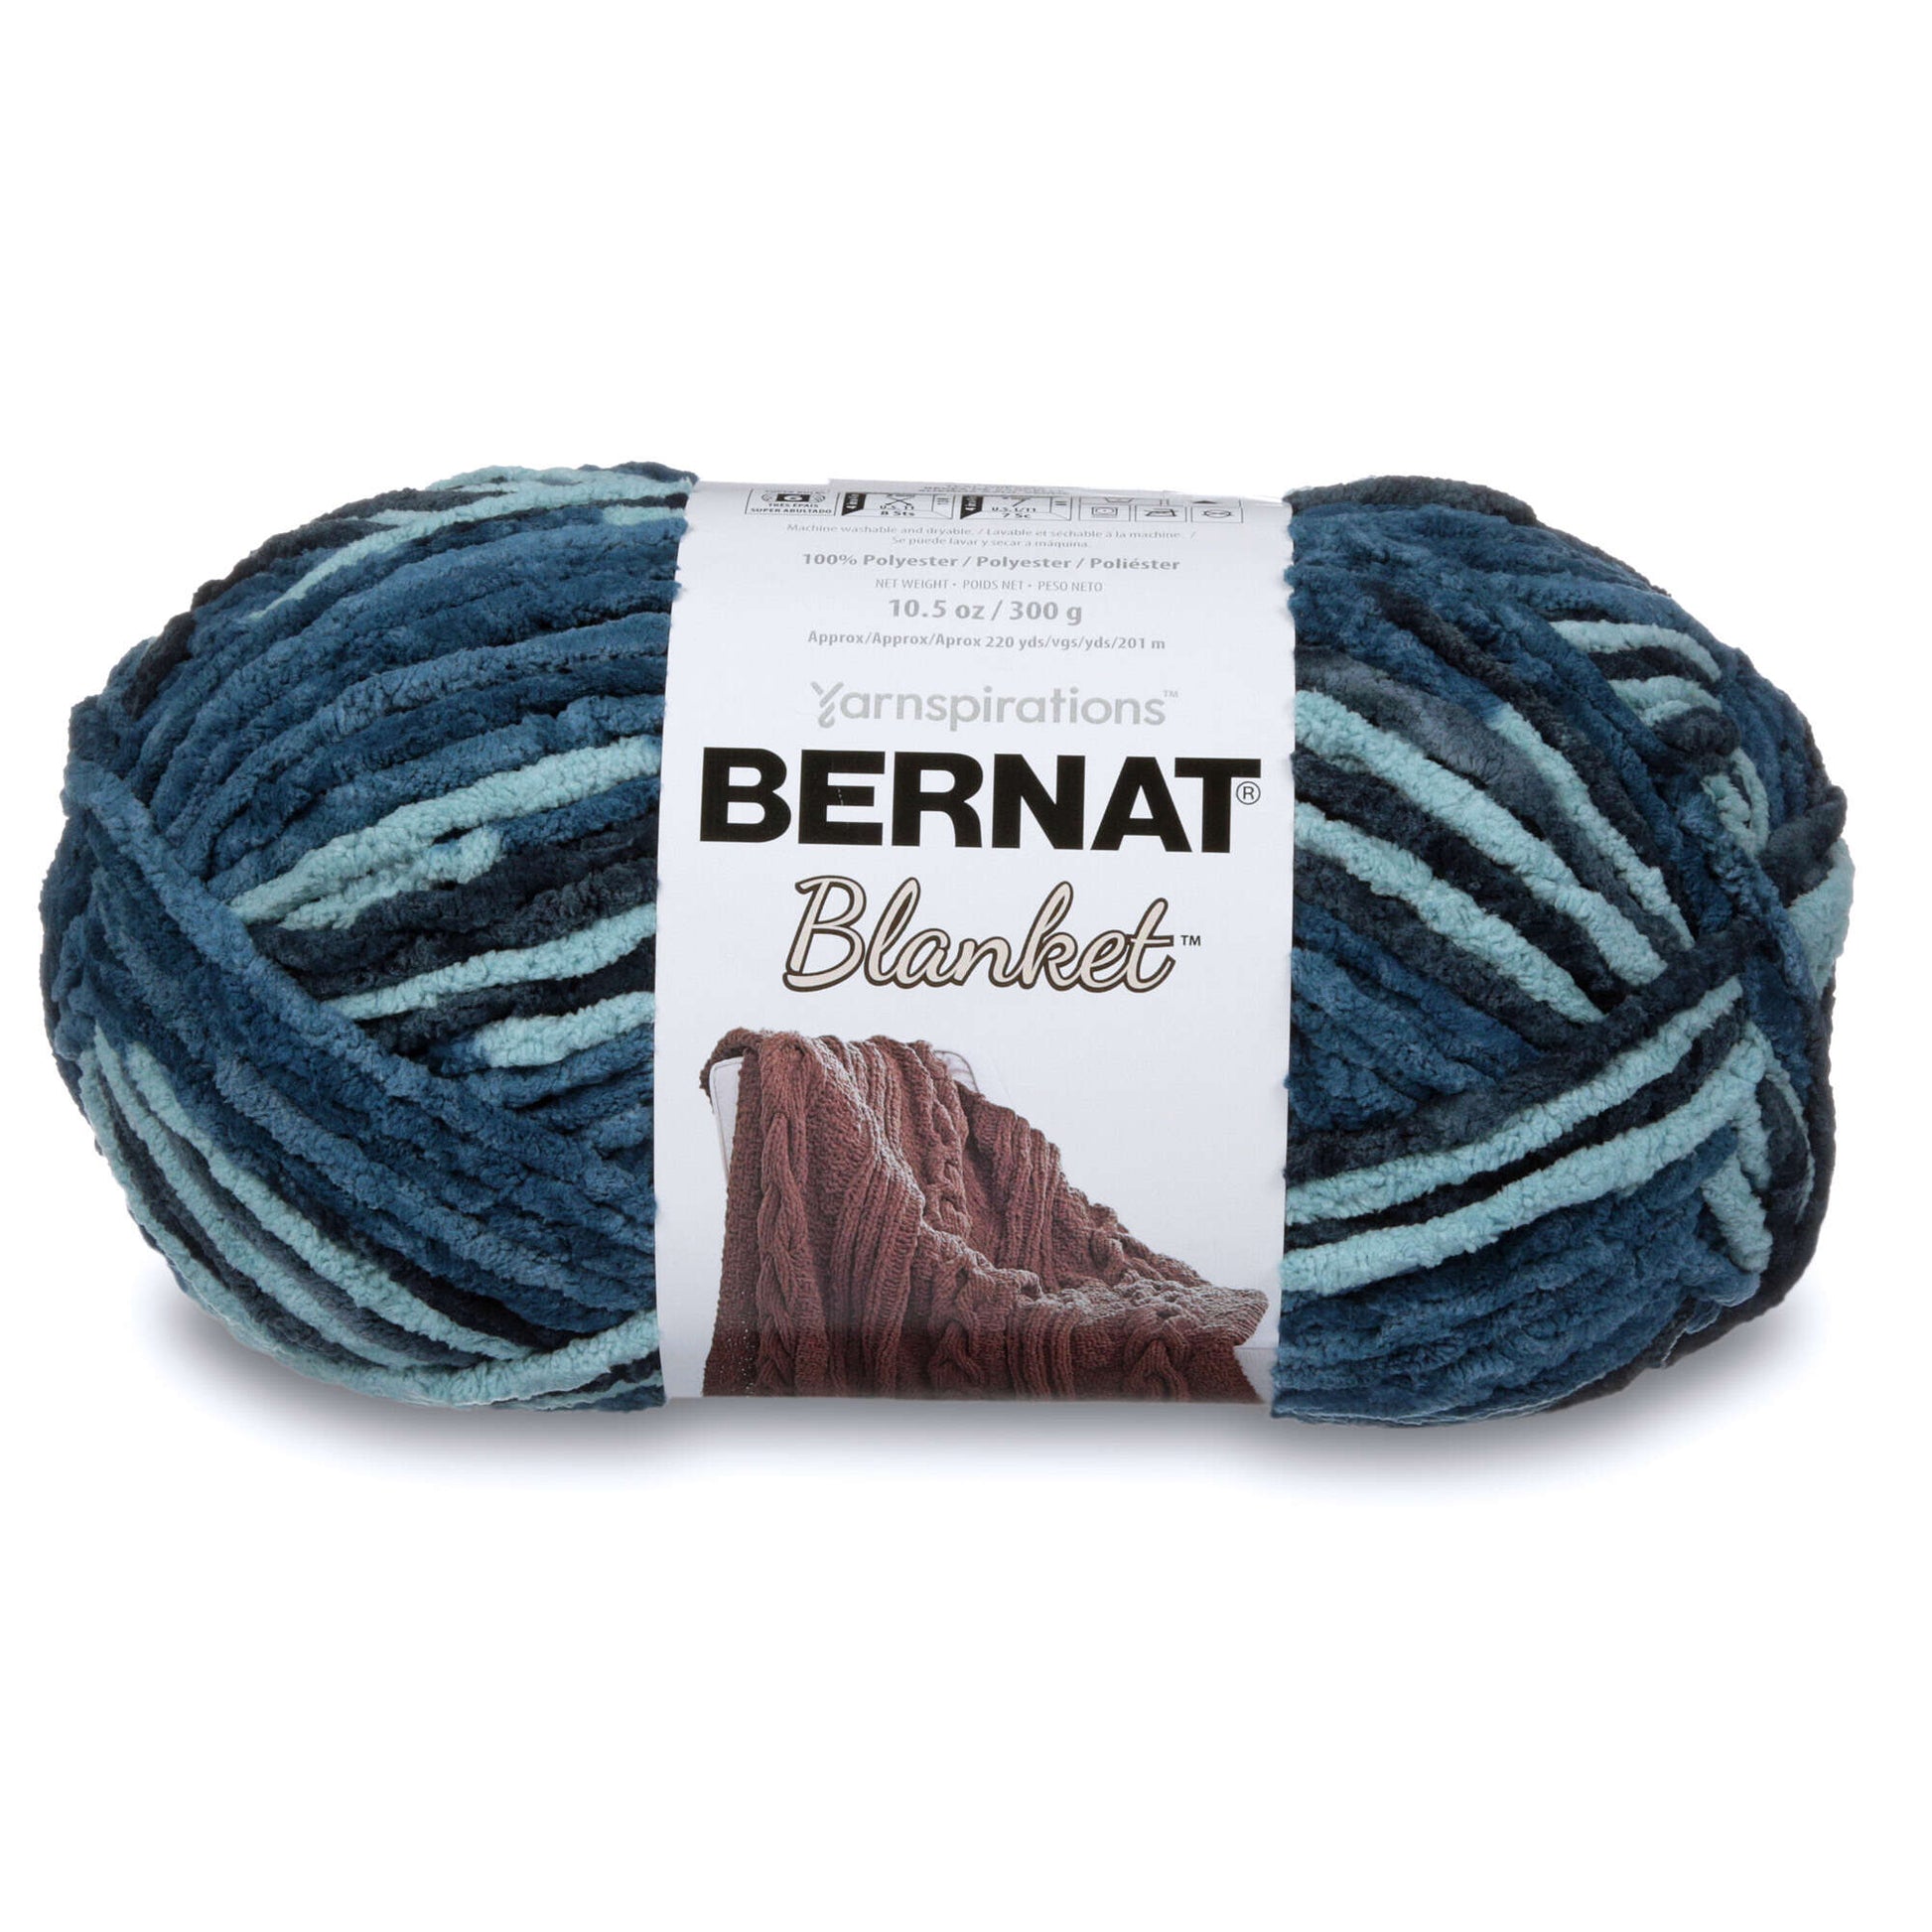 Bernat Blanket Yarn (300g/10.5oz) Teal Dreams